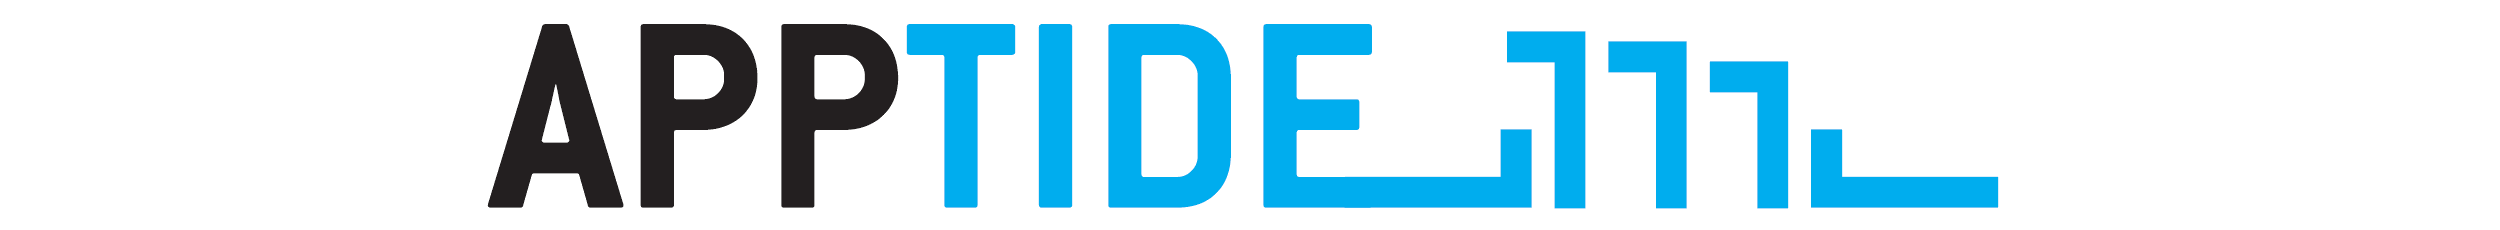 APPTIDE logo